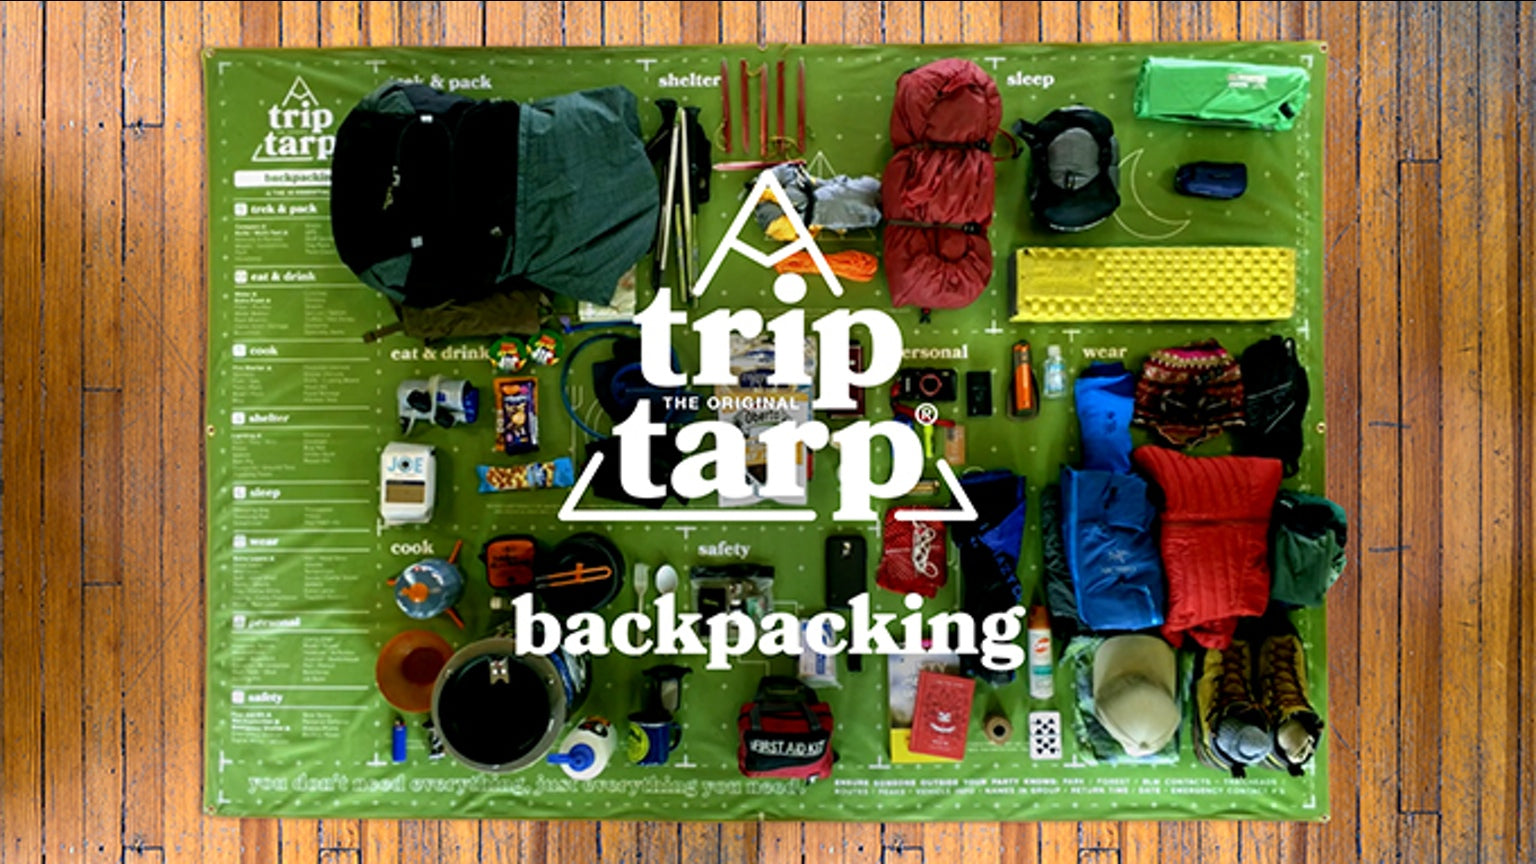 Trip Tarp on Kickstarter